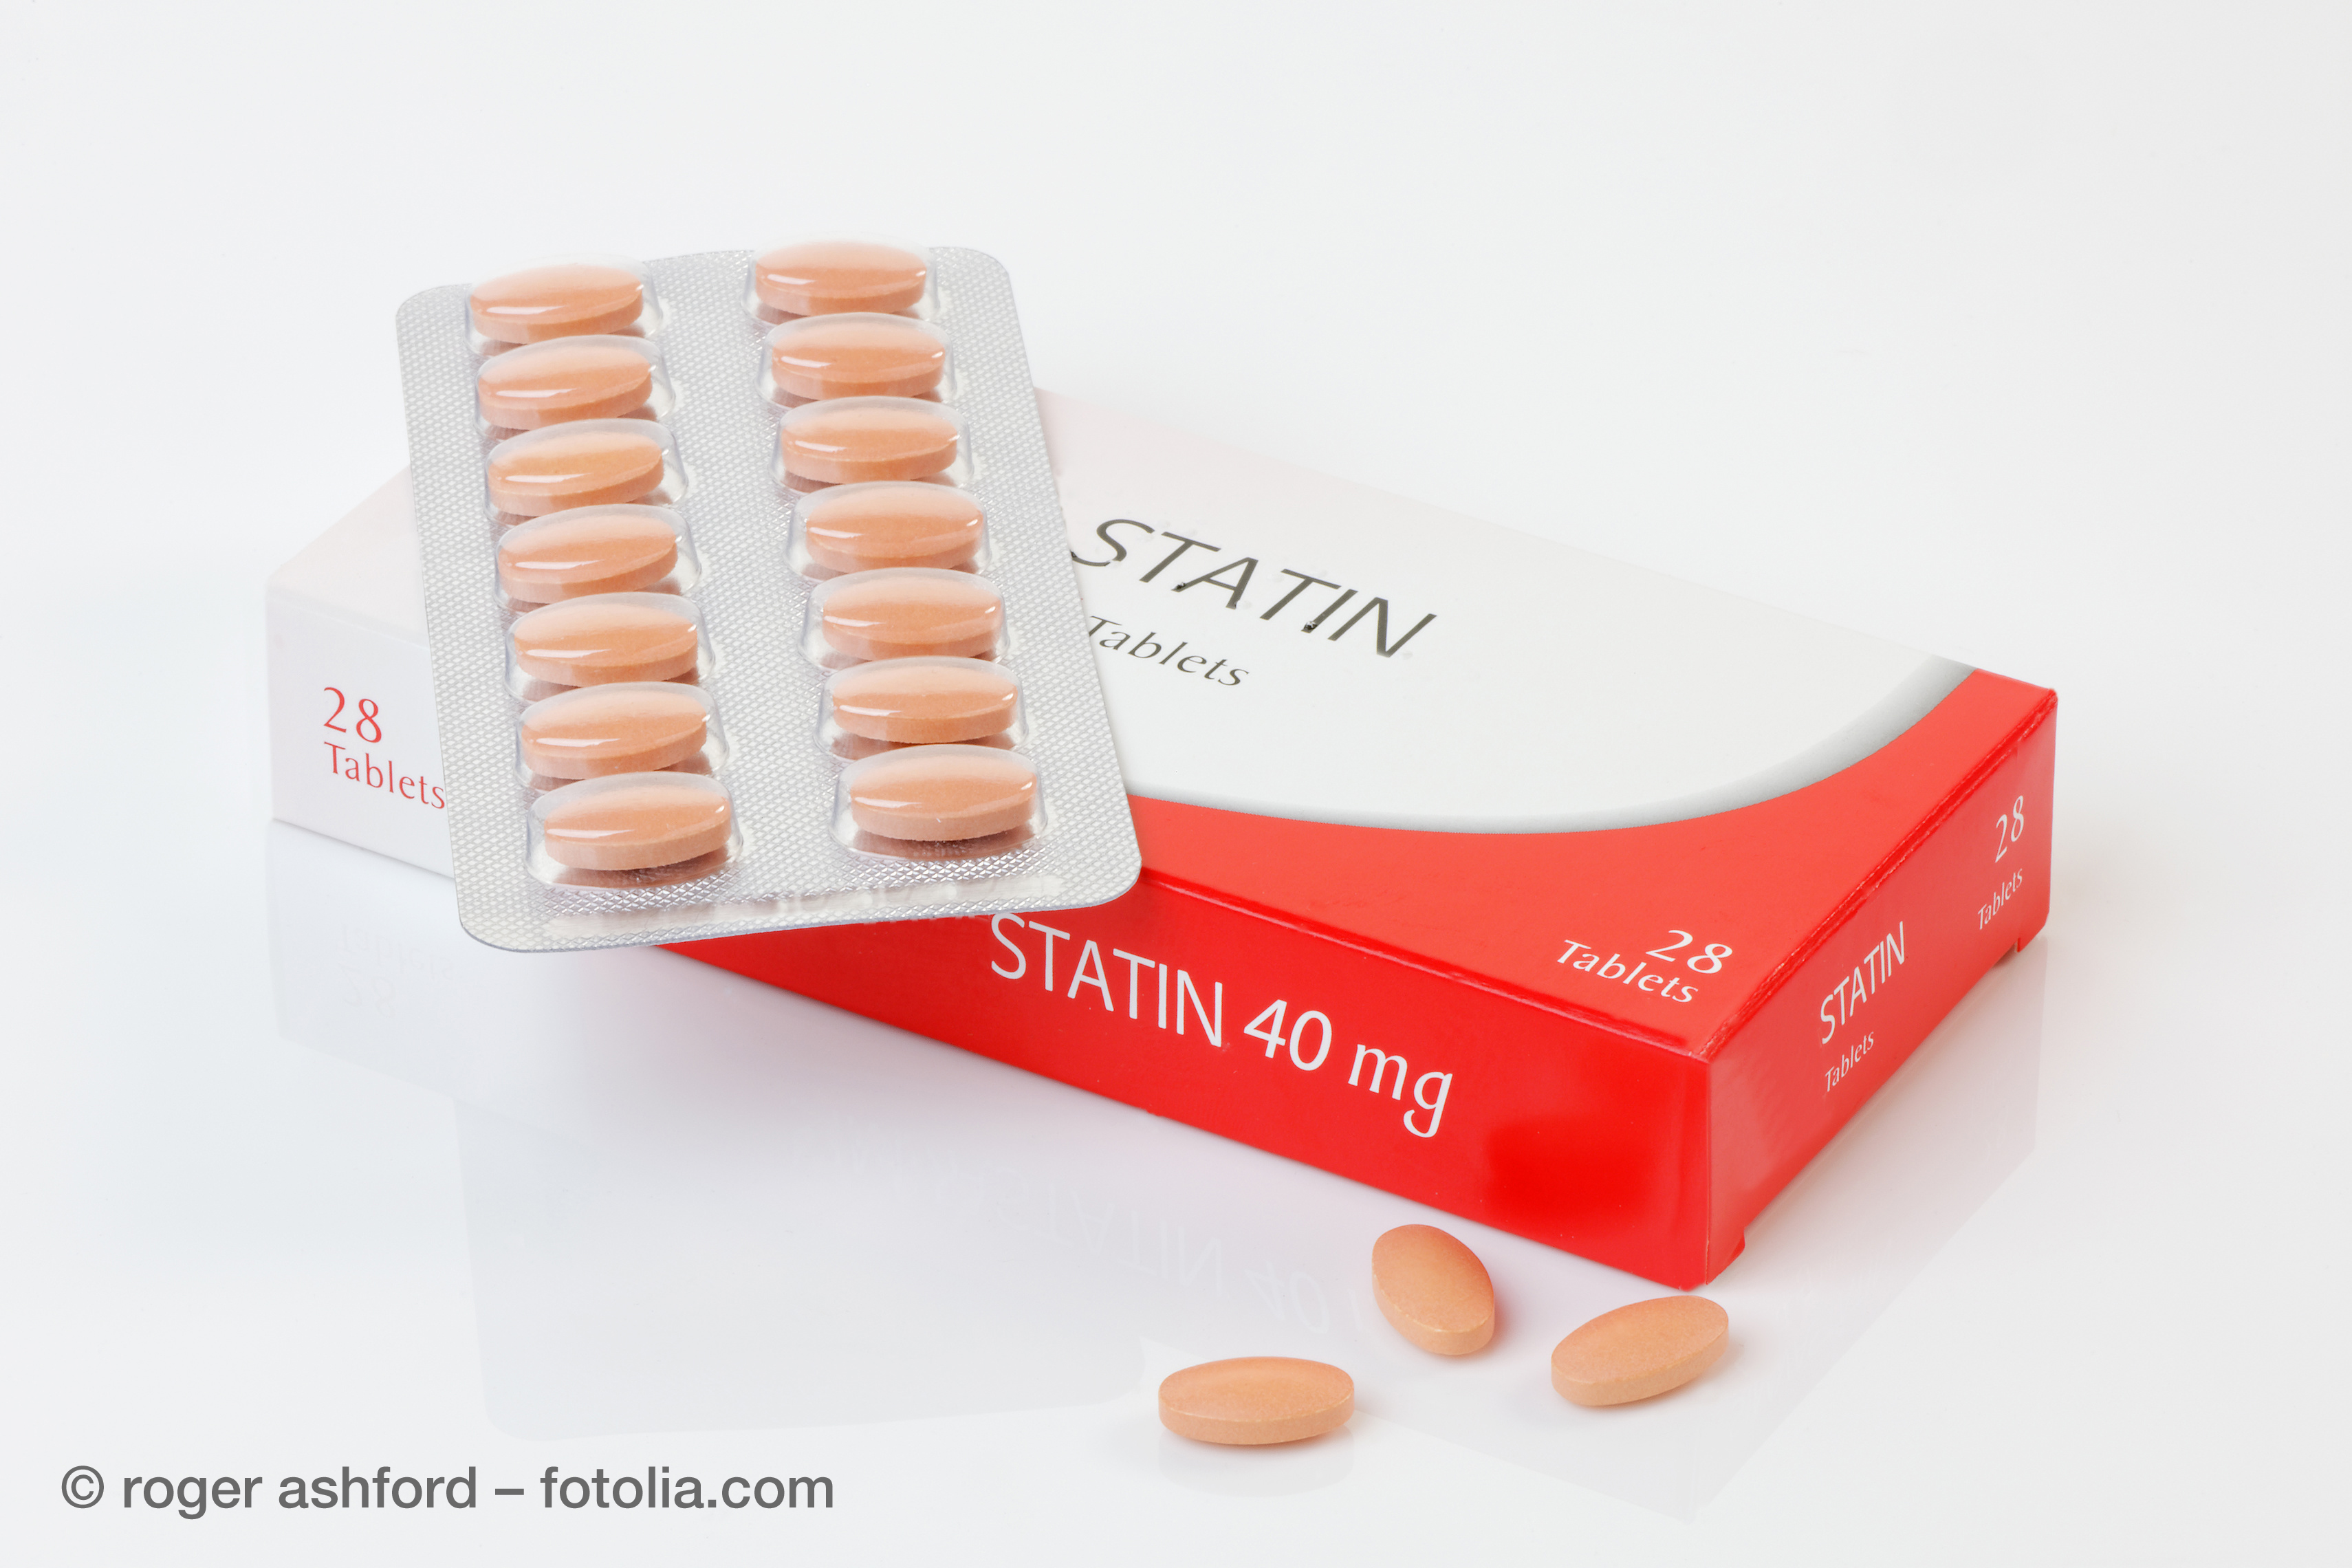 Statine sind die bekanntesten Cholesterinsenker